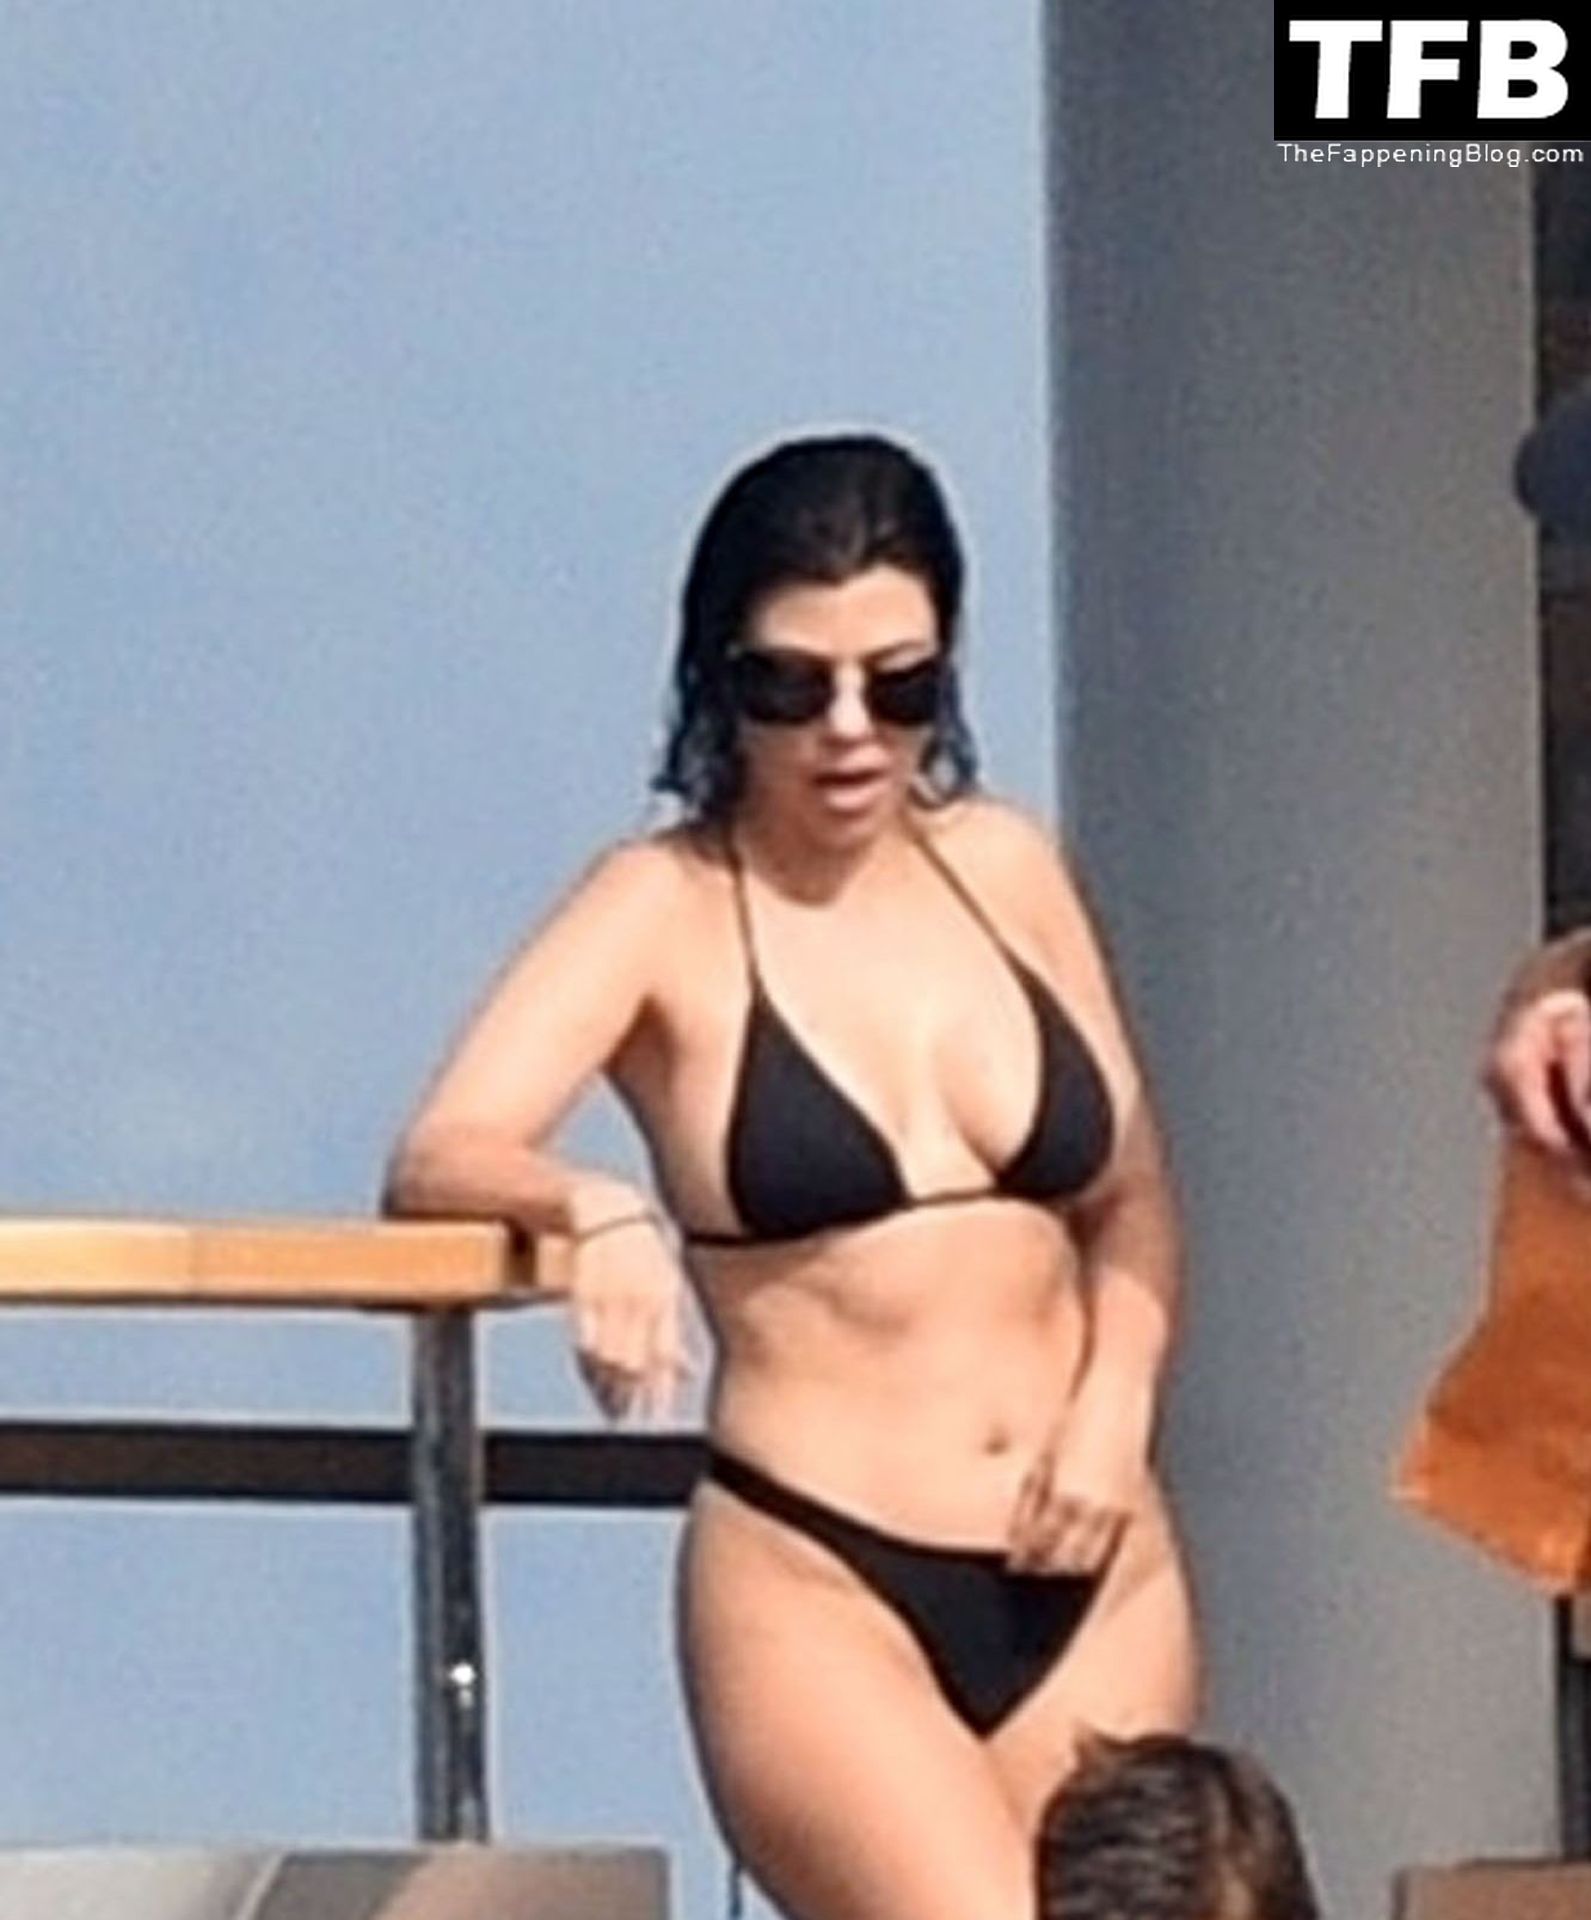 Kourtney-Kardashian-Sexy-The-Fappening-Blog-24-1.jpg